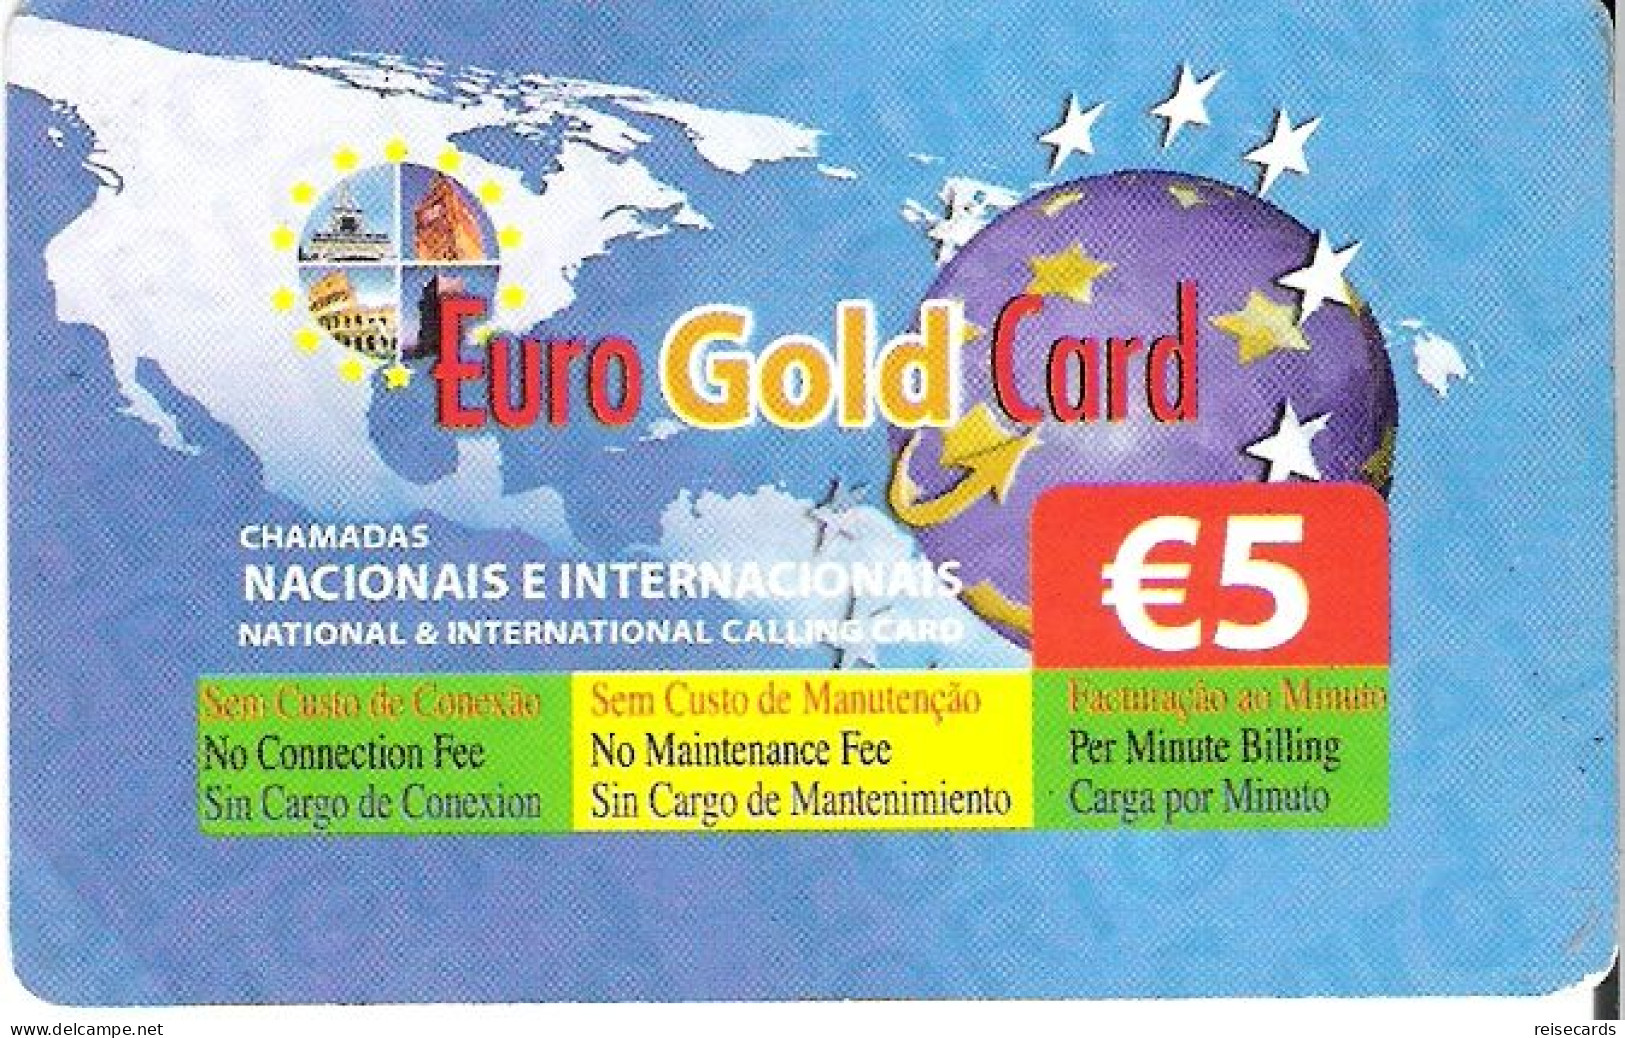 Portugal: Prepaid Novis - Euro Gold Card - Polonia